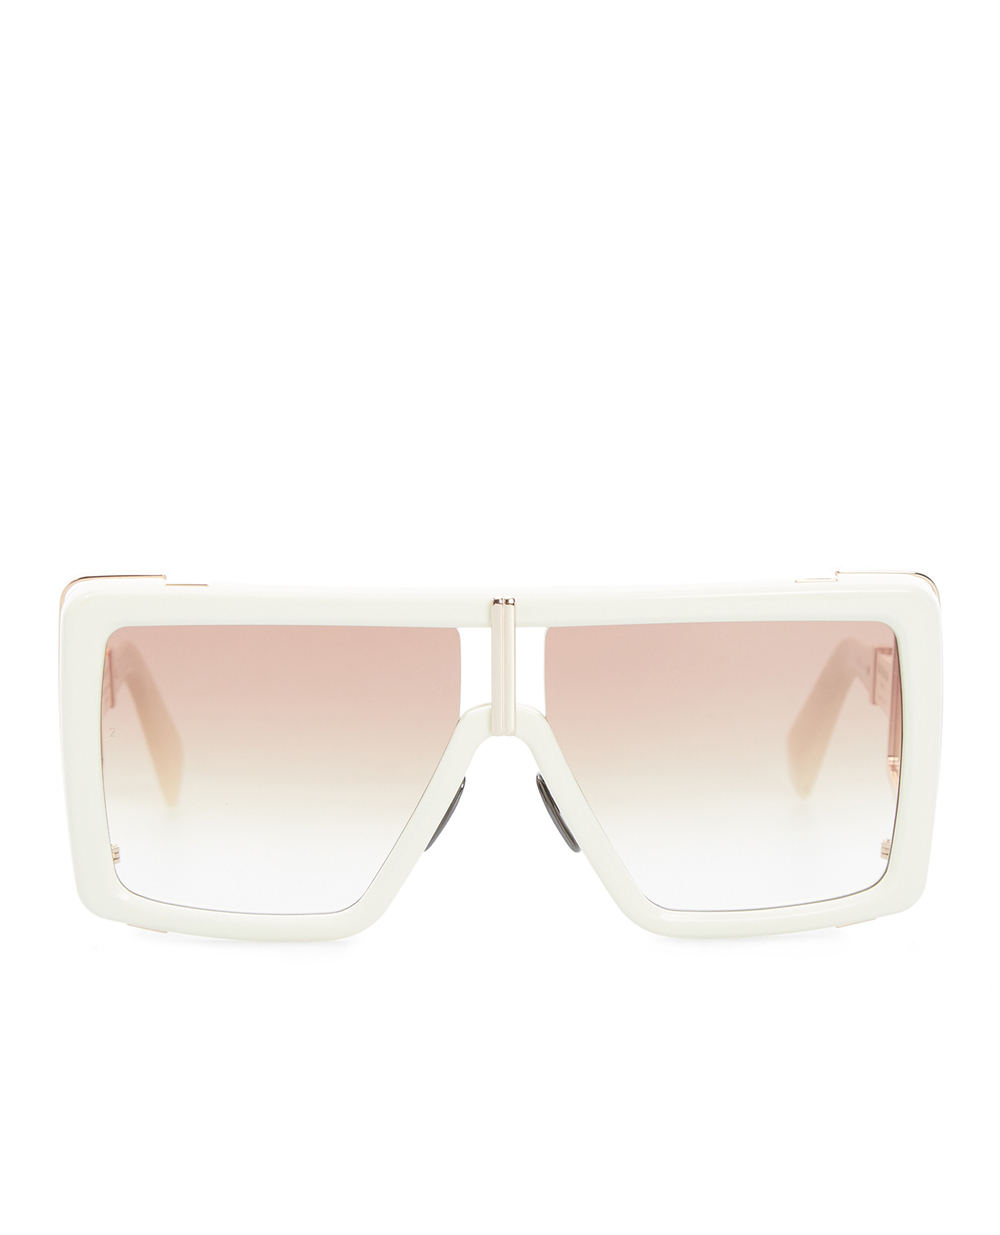 Солнцезащитные очки Balmain BPS-107D-61, белый цвет • Купить в интернет-магазине Kameron